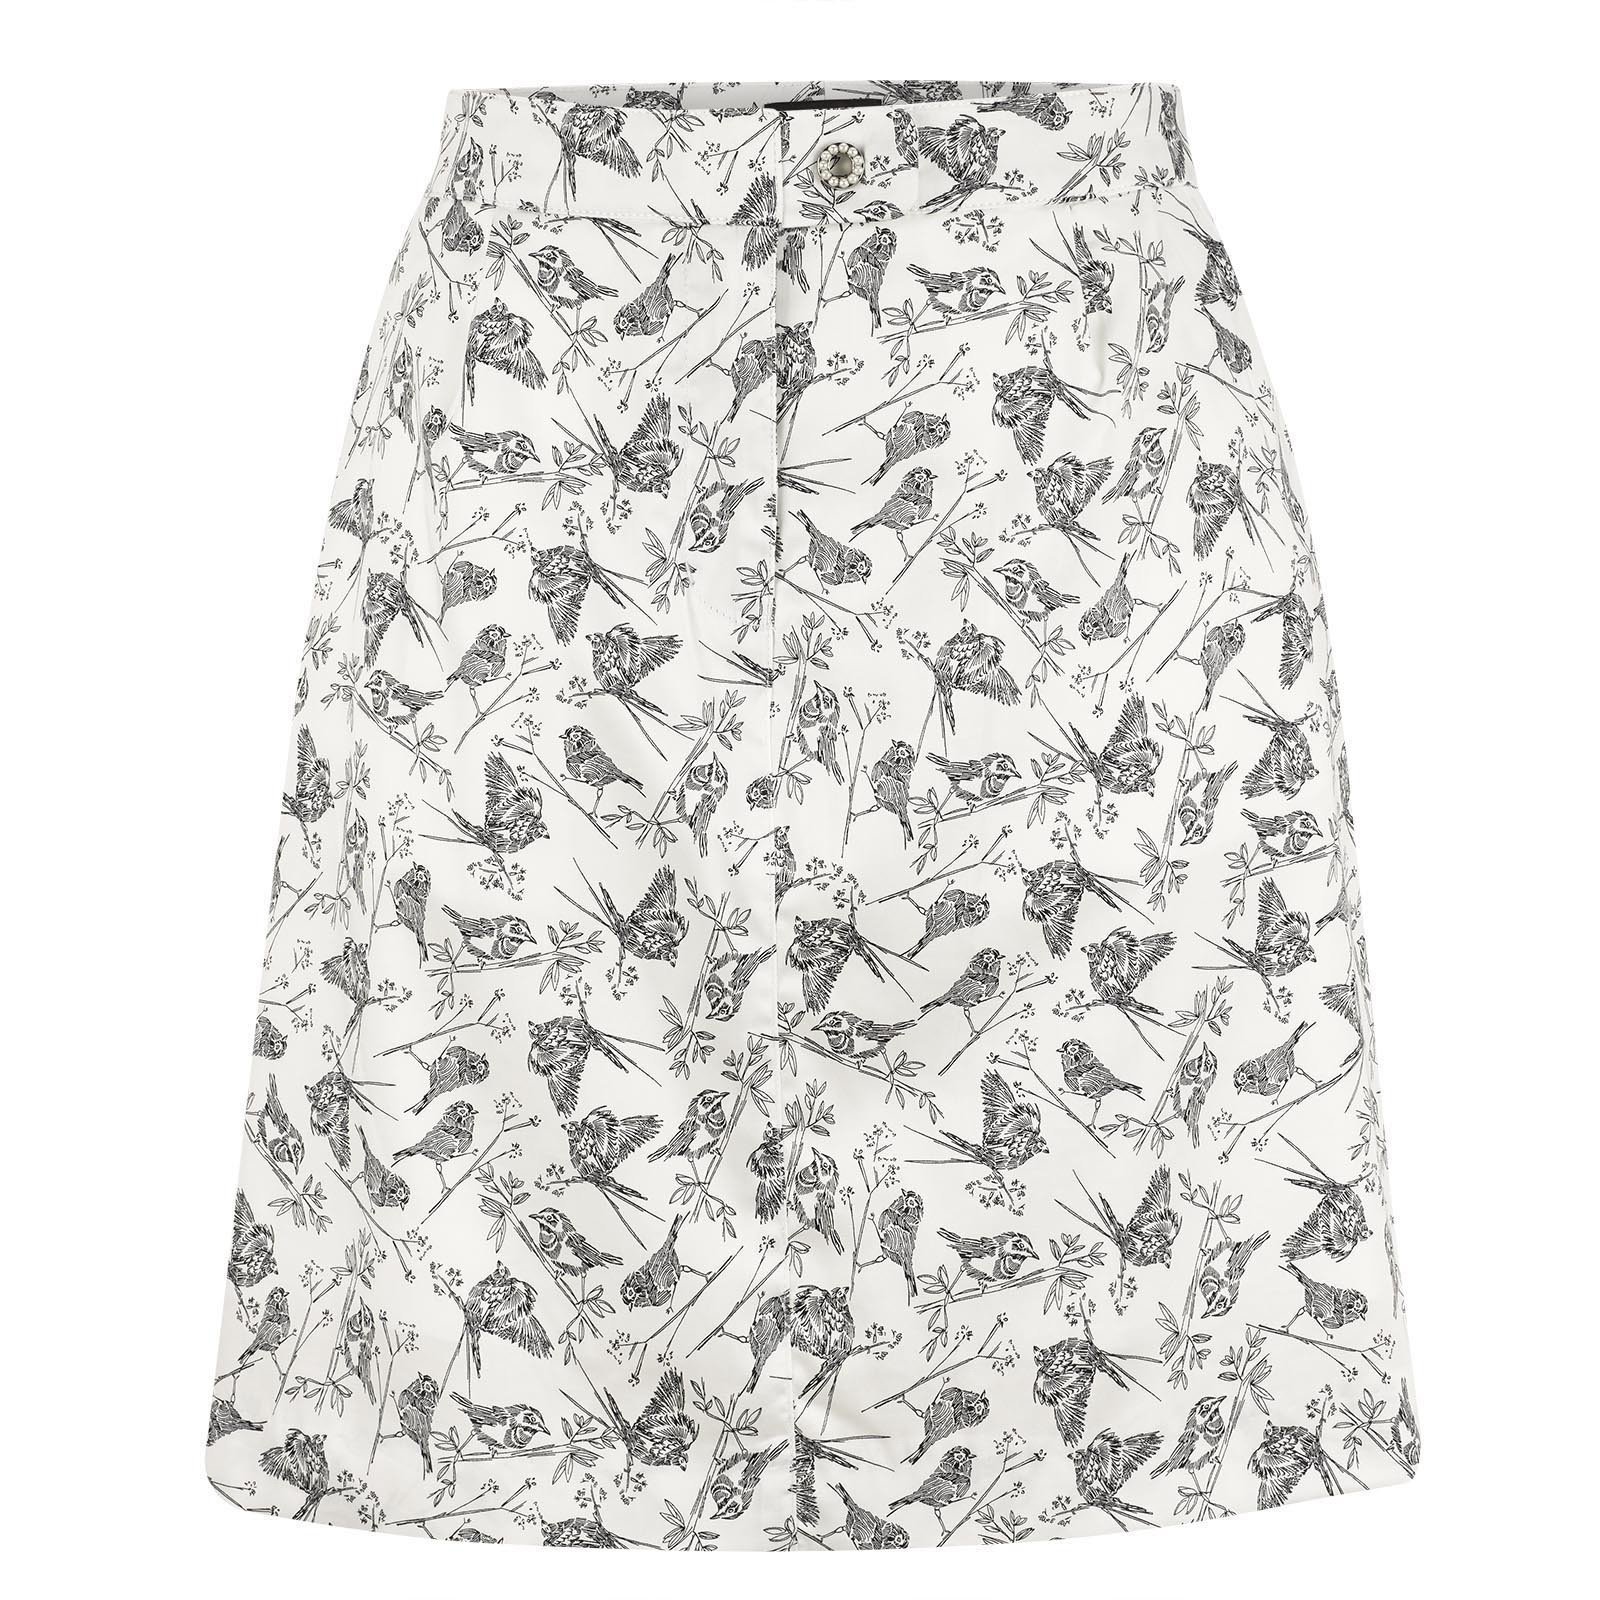 Skirt / Dress Golfino Pearls Printed Womens Skort Offwhite 40